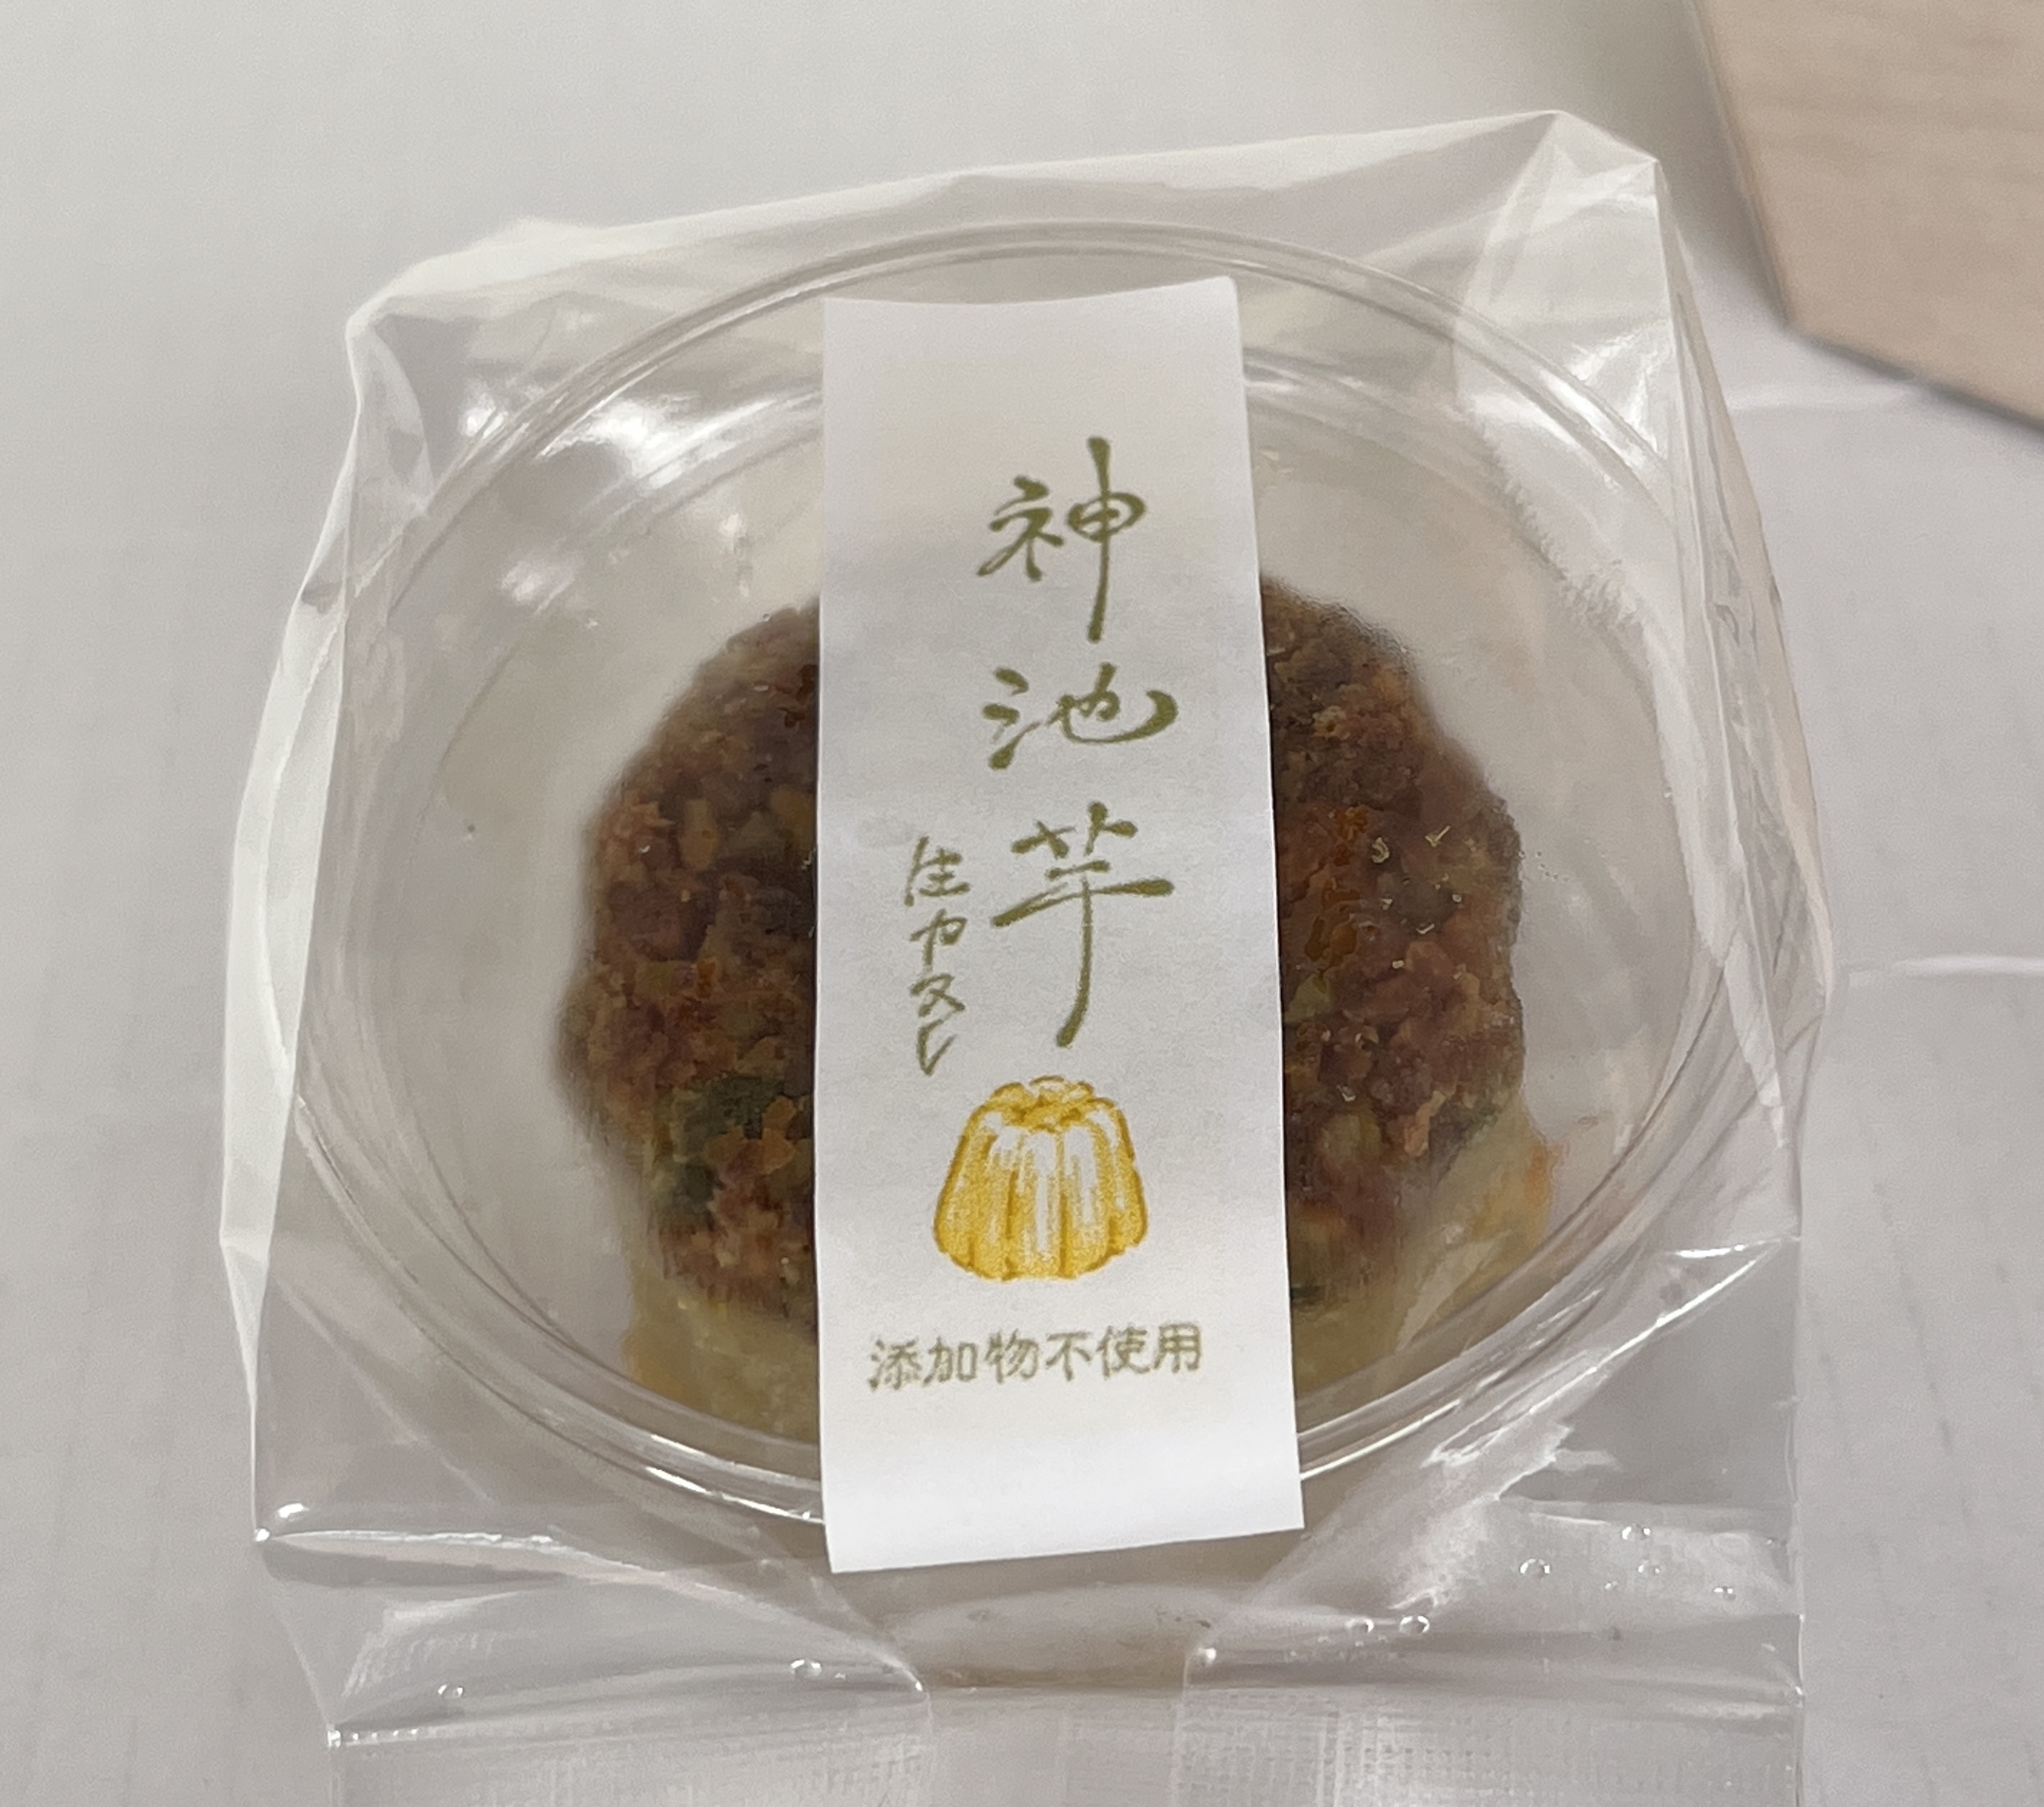 【神池芋の生カヌレ】が高知県香美市ものづくり大賞受賞しました✨